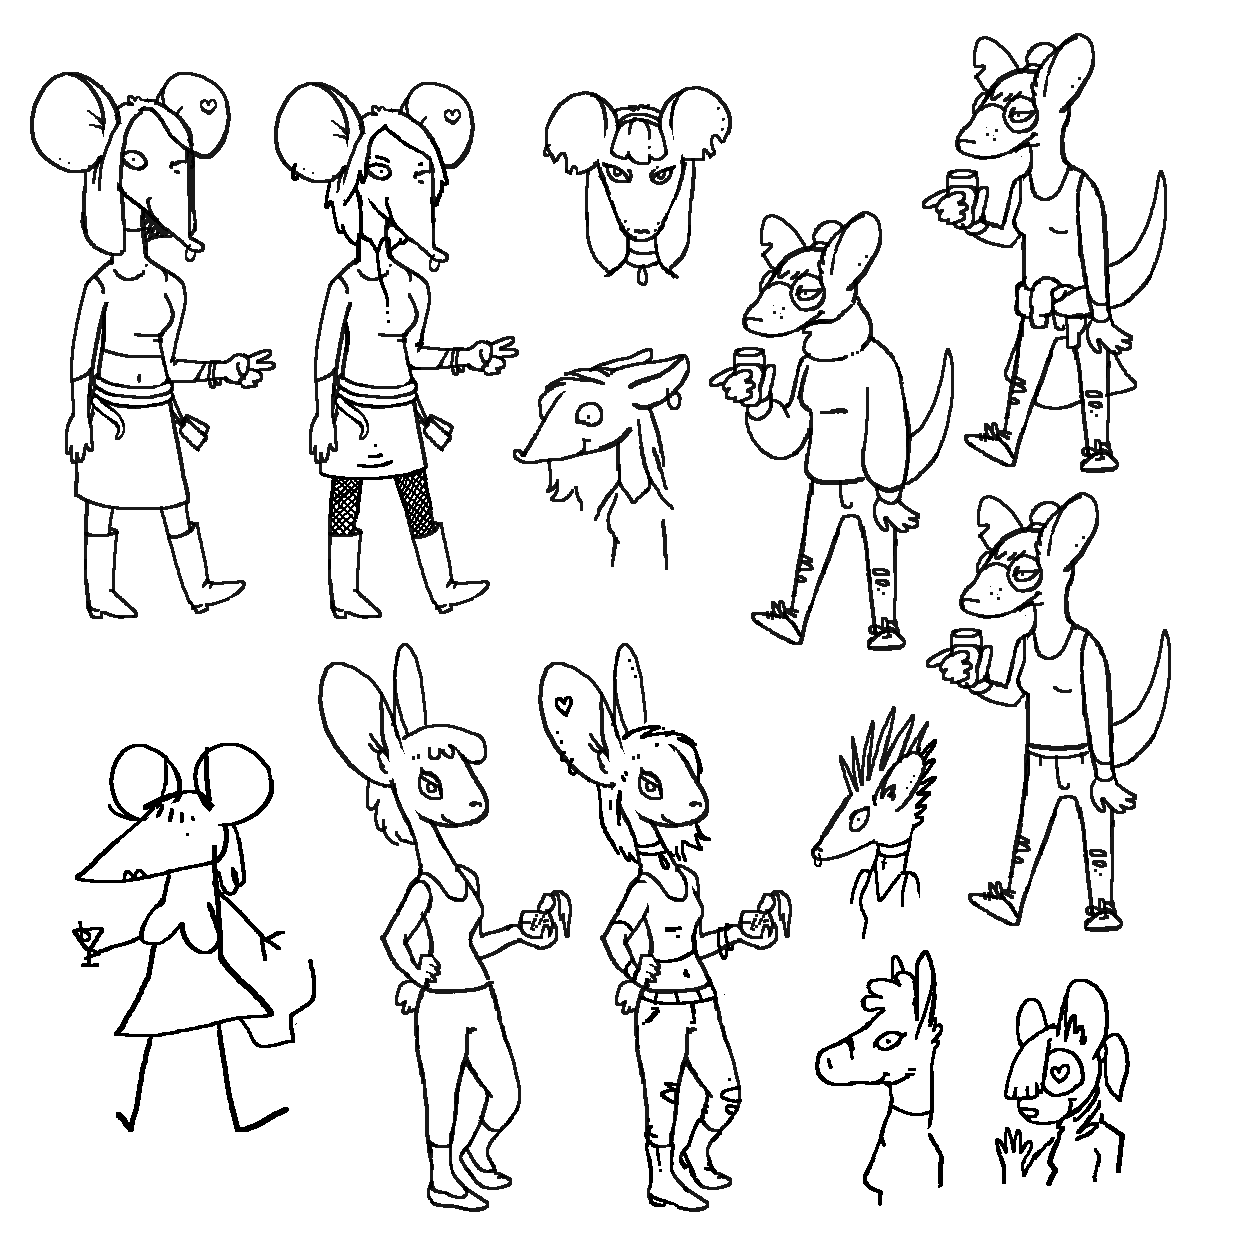 Ratgirl Sketches 02.png